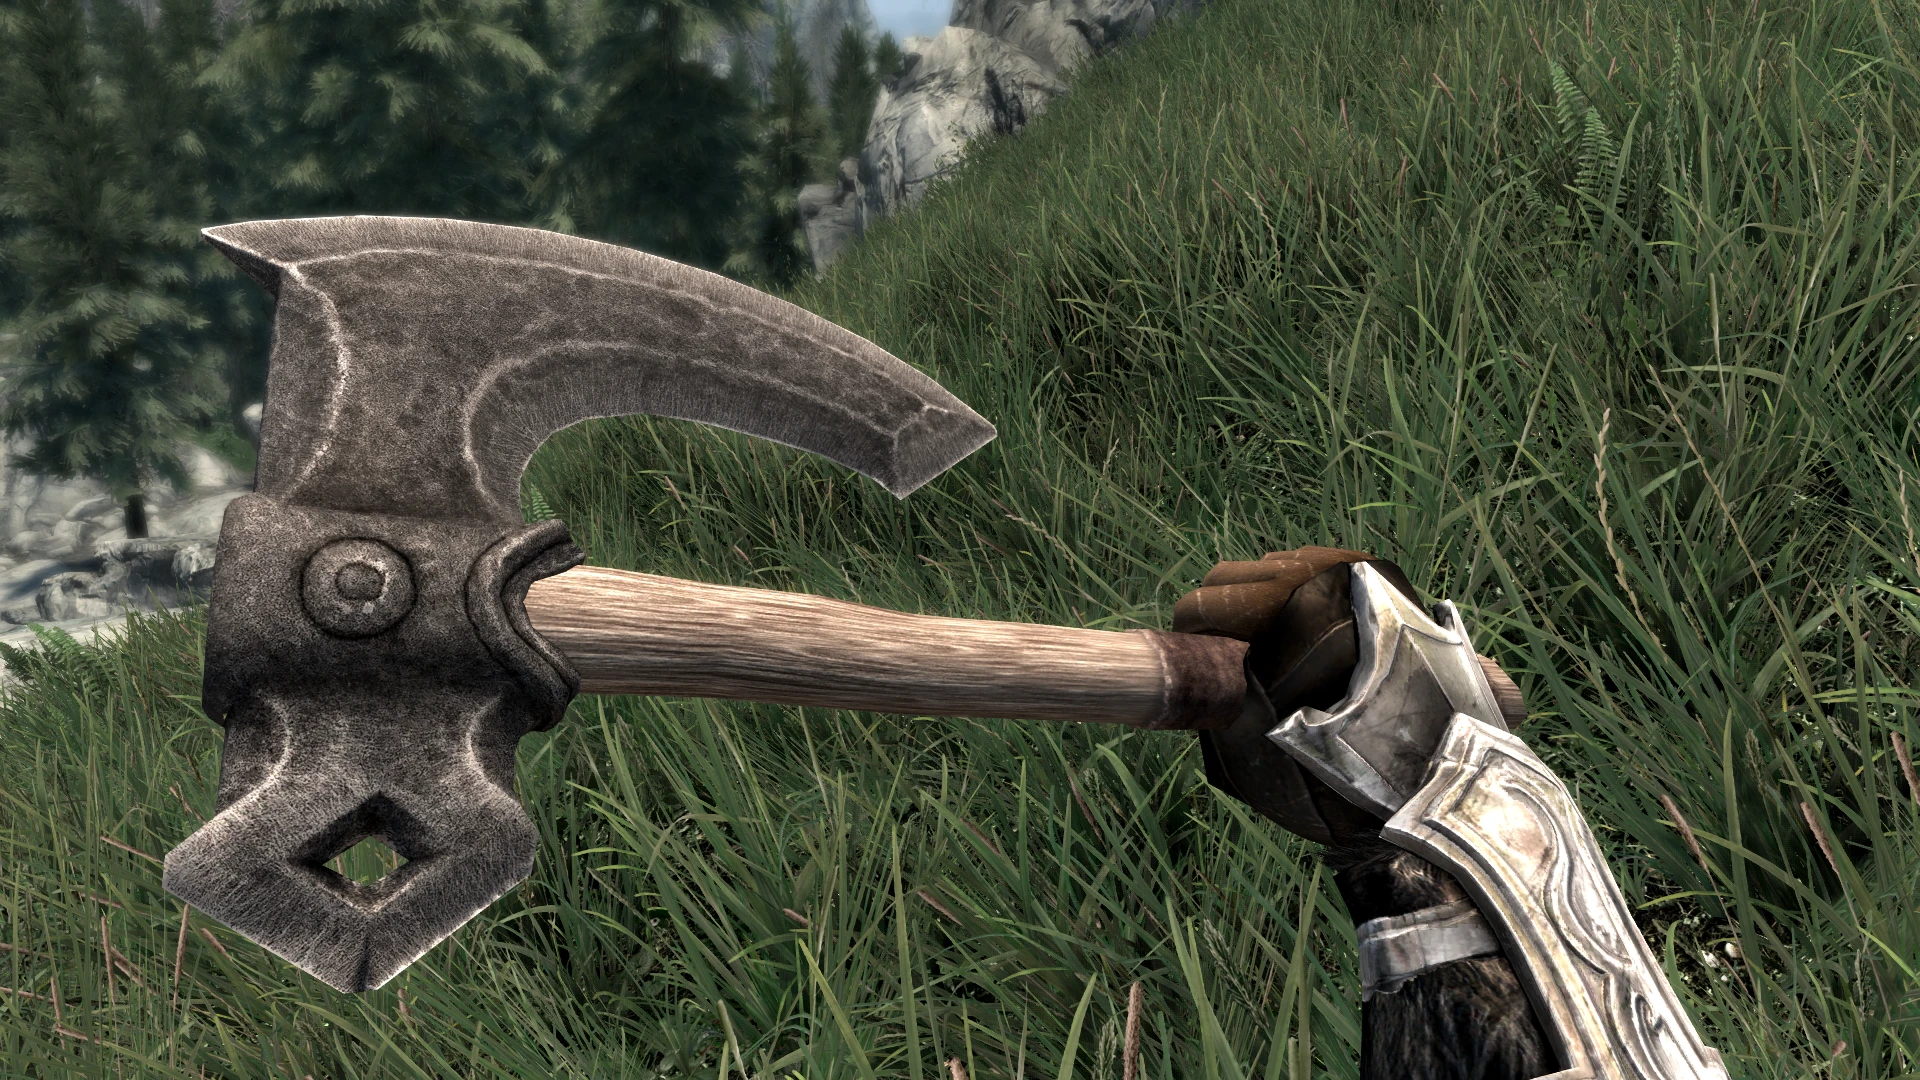 Skyrim ebony war axe best looking weapon